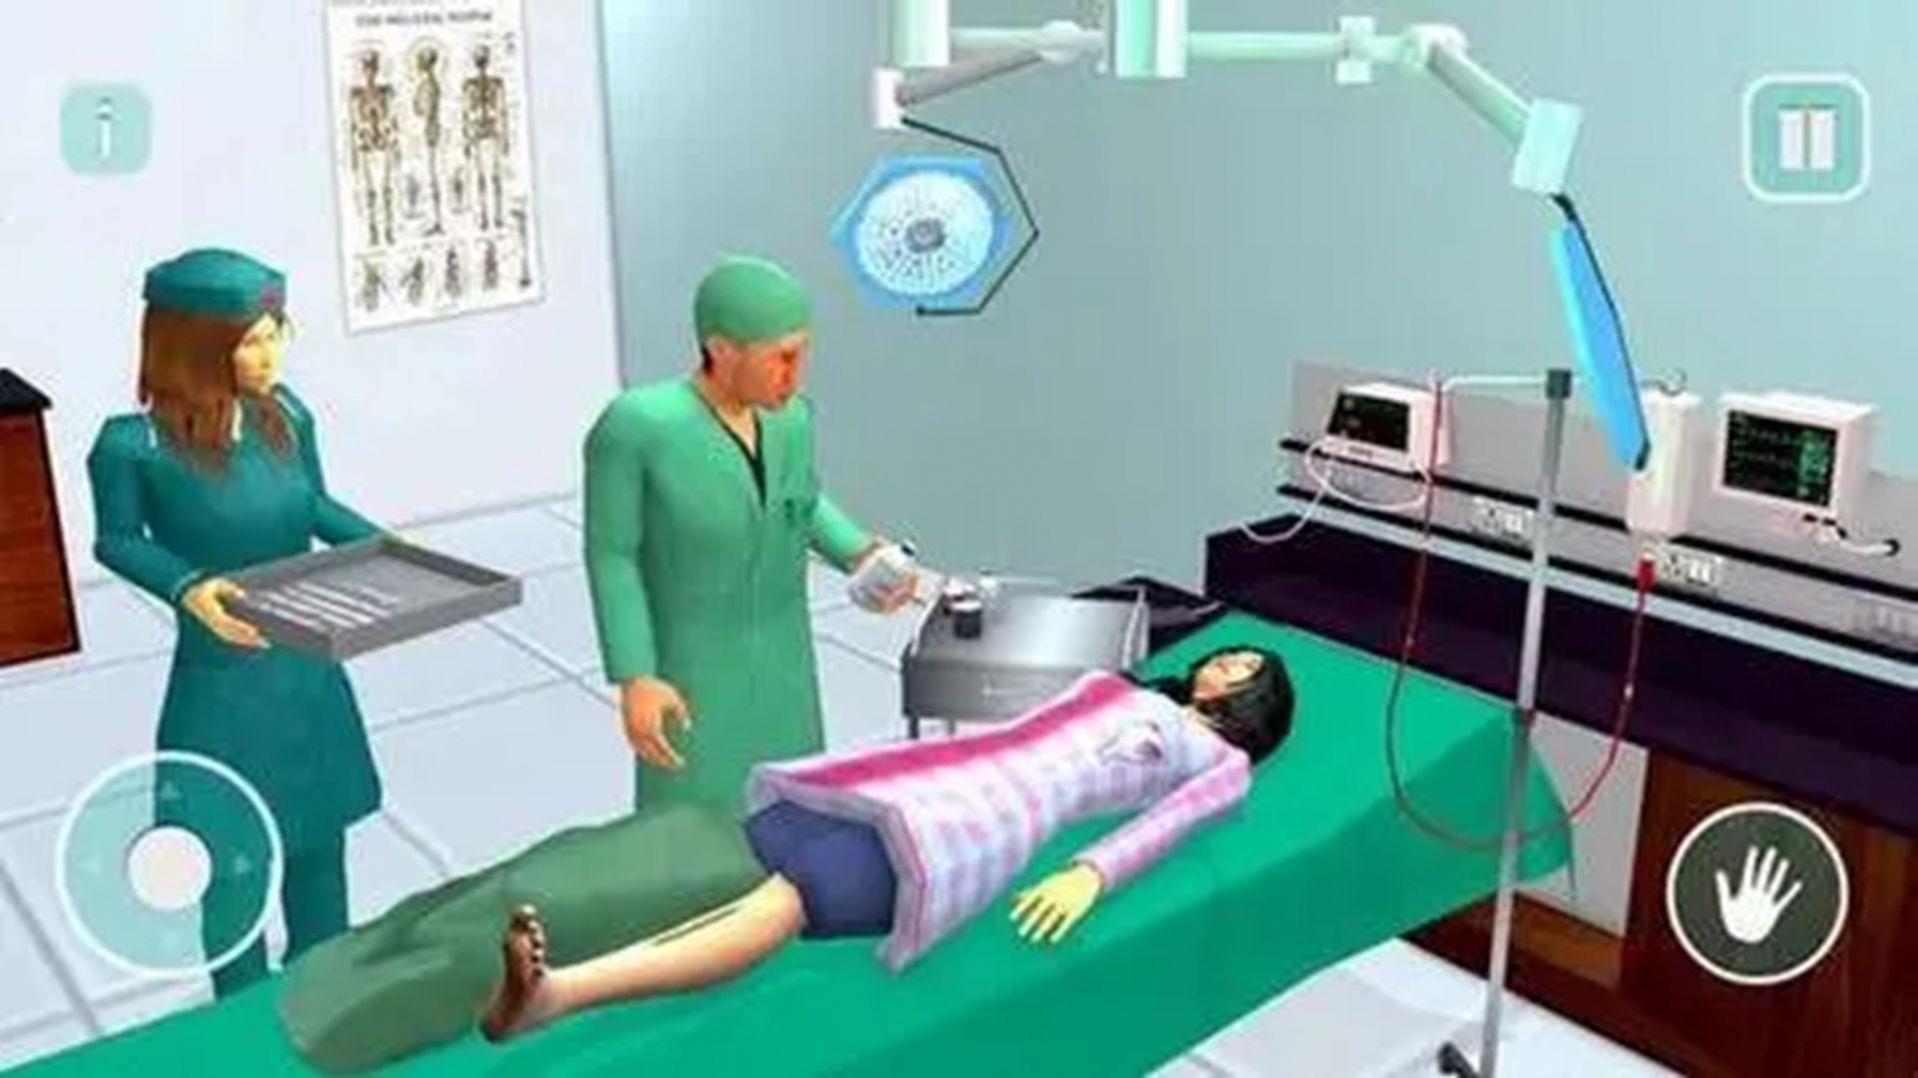 外科手术医生模拟器手游下载-外科手术医生模拟器免费手游下载 V1.3